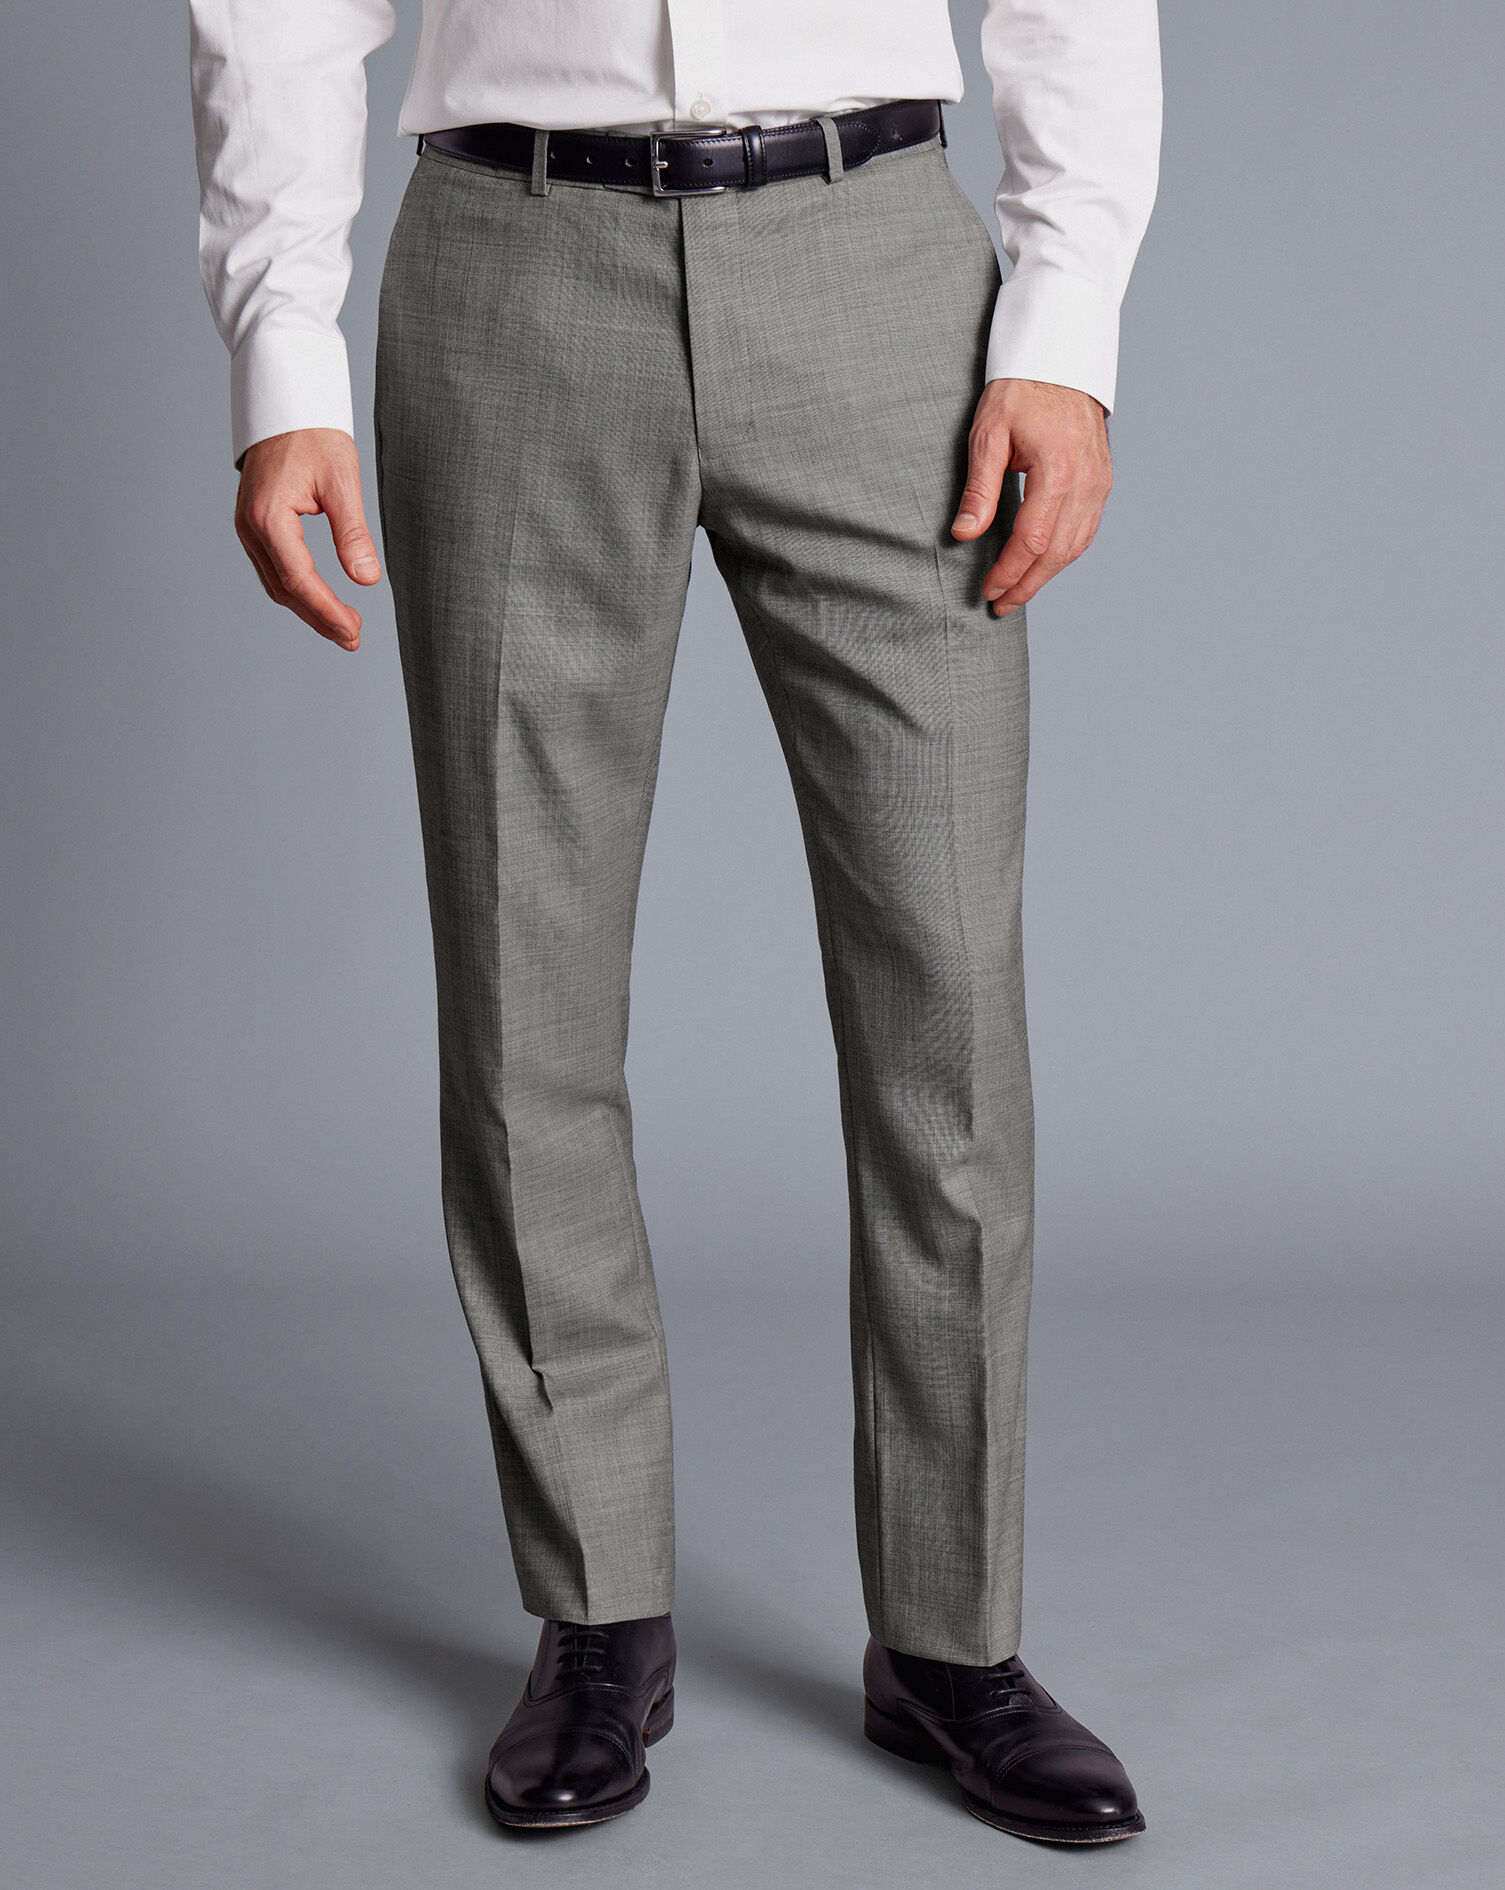 OMC Signature Men's Light Grey Slim Fit Suit (2-Pieces) – OMC Formal